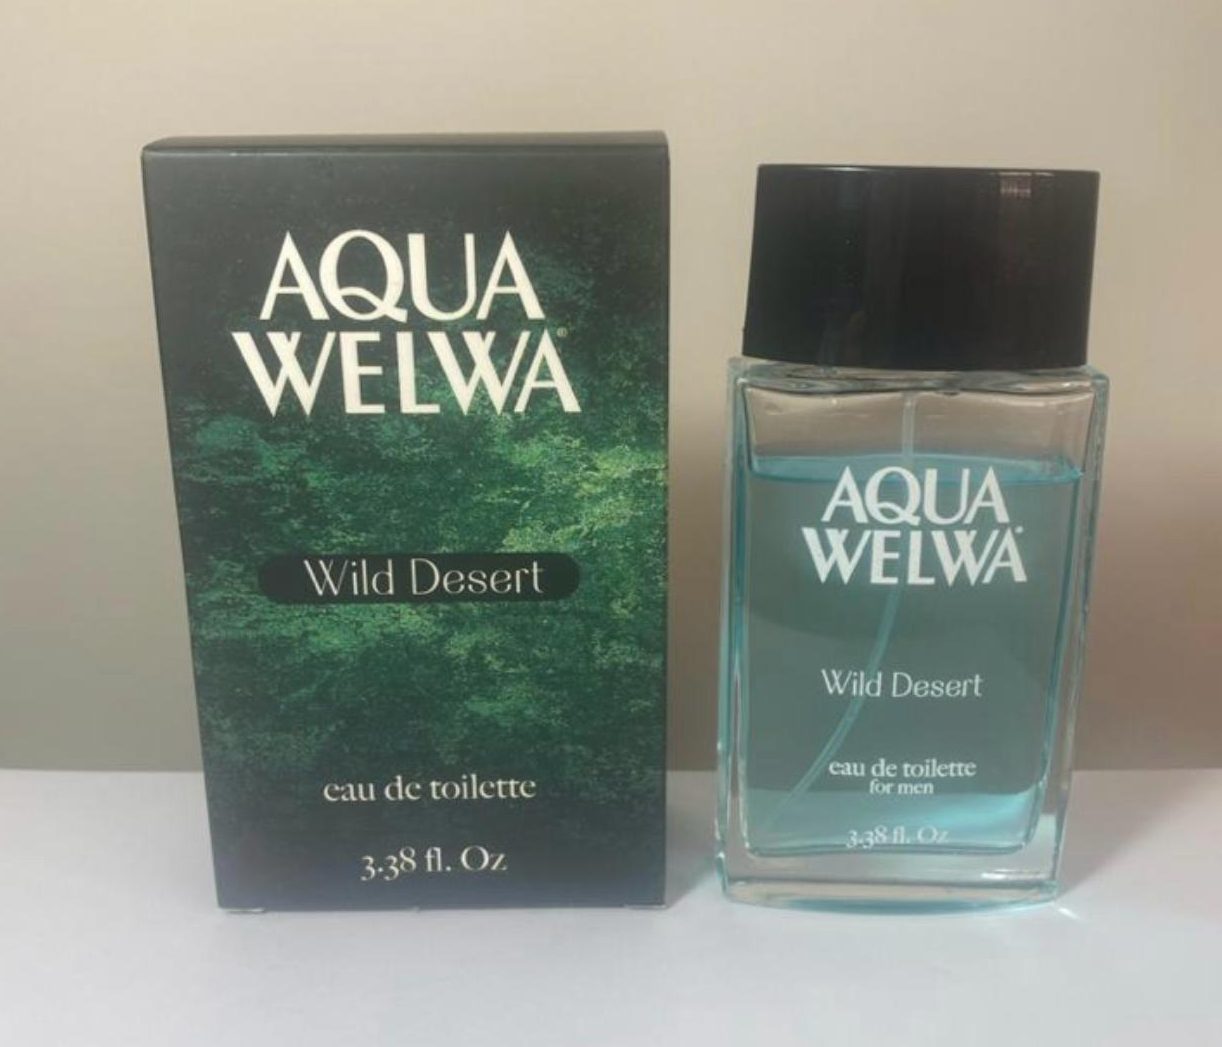 Aqua Welwa Wild Desert